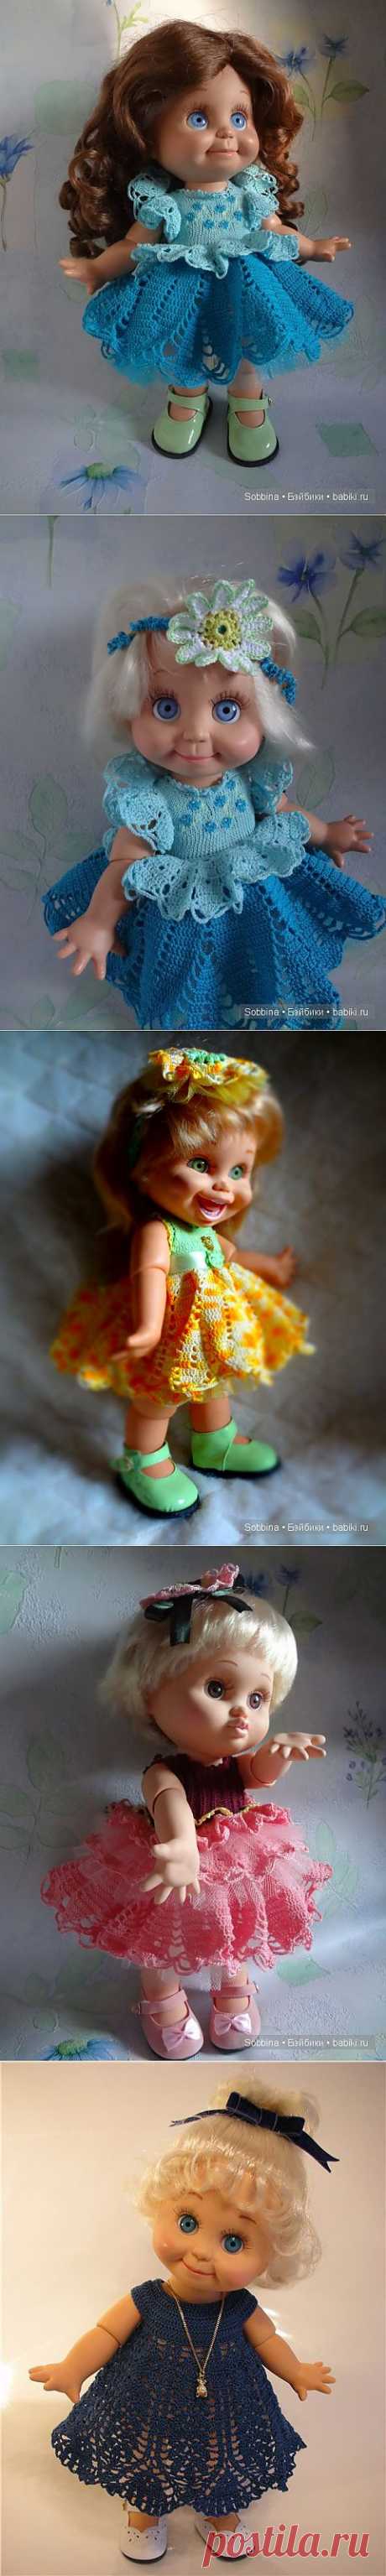 Сенди-незабудка, кукла Galoob Baby Face doll / Одежда и обувь для кукол - своими руками и не только / Бэйбики. Куклы фото. Одежда для кукол